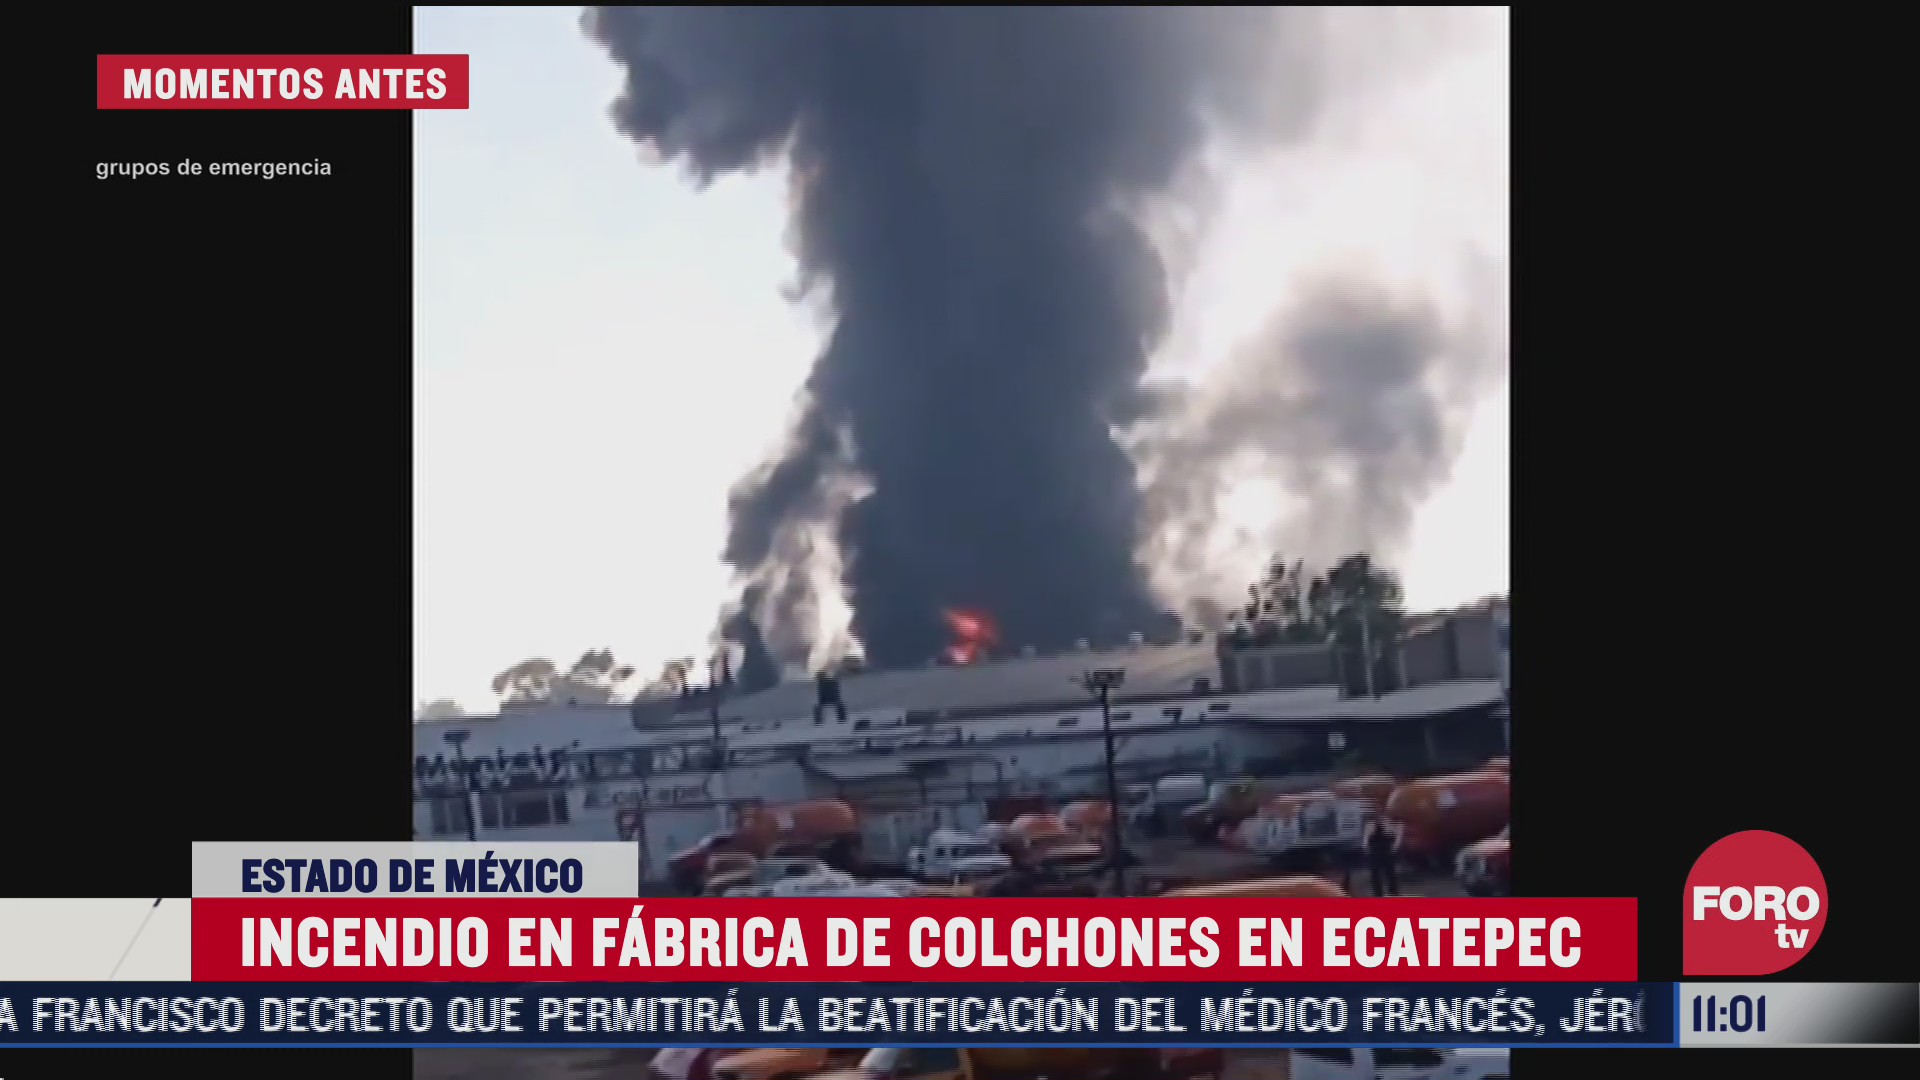 impresionantes imagenes del incendio en fabrica de colchones de ecatepec